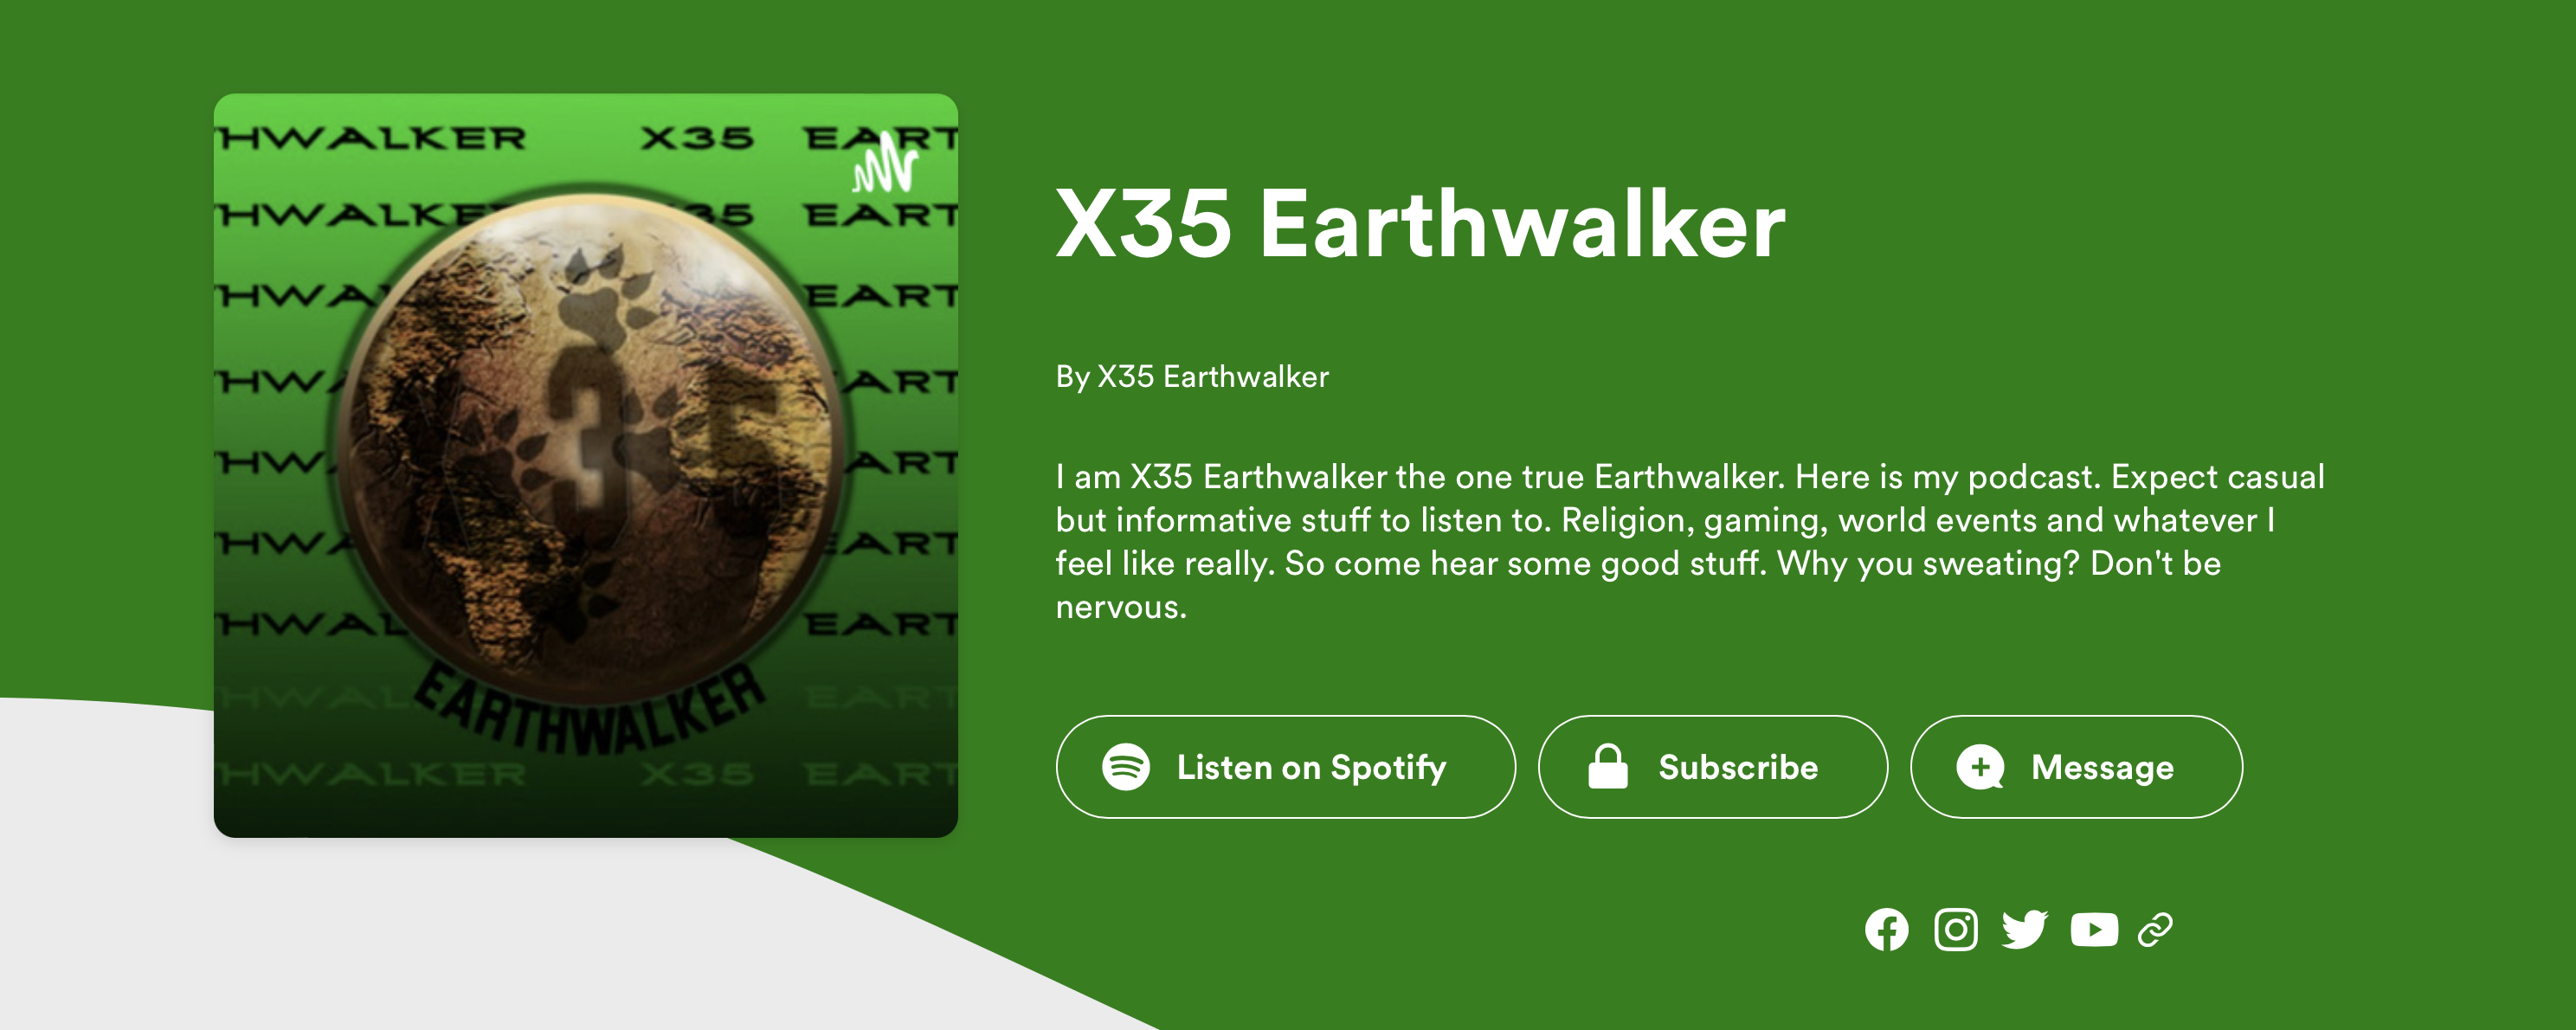 X35 Earthwalker podcast